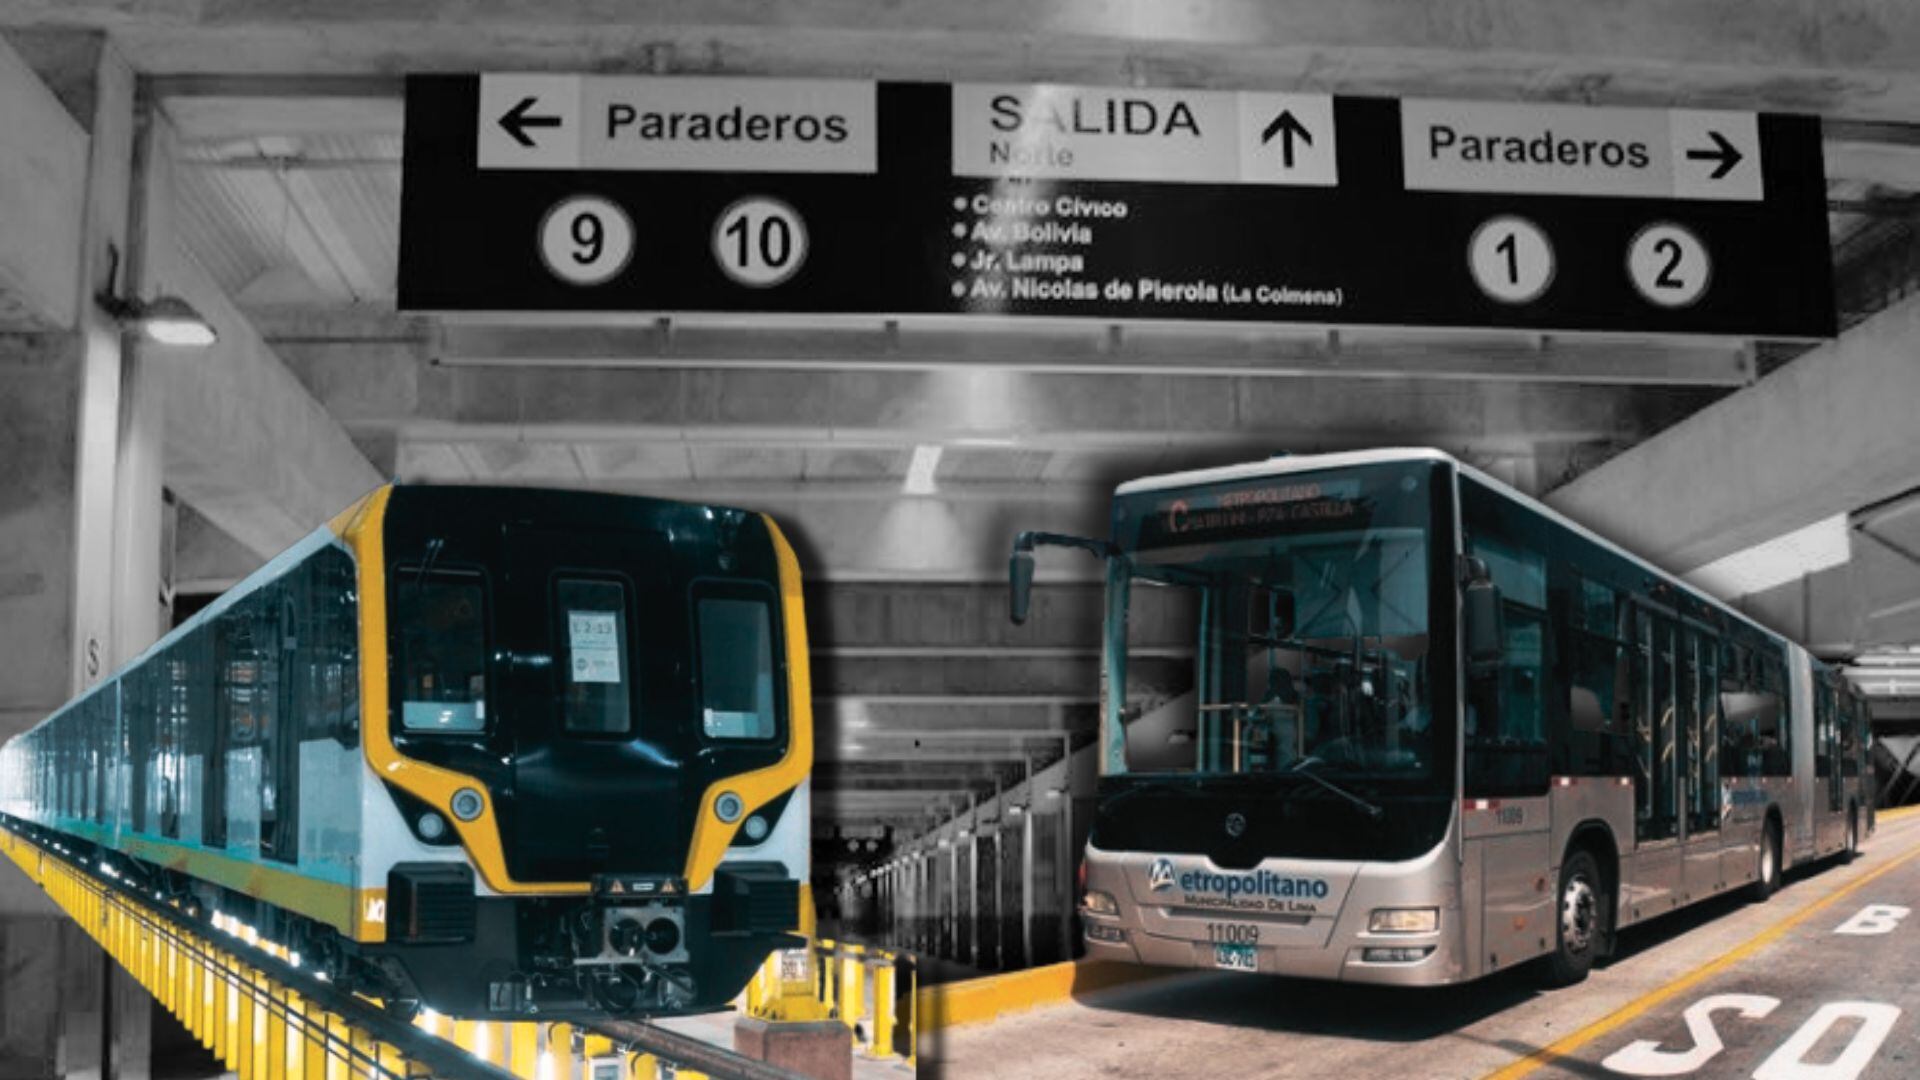 Buses del Metropolitano y el Metro de Lima con fondo de la estación central.